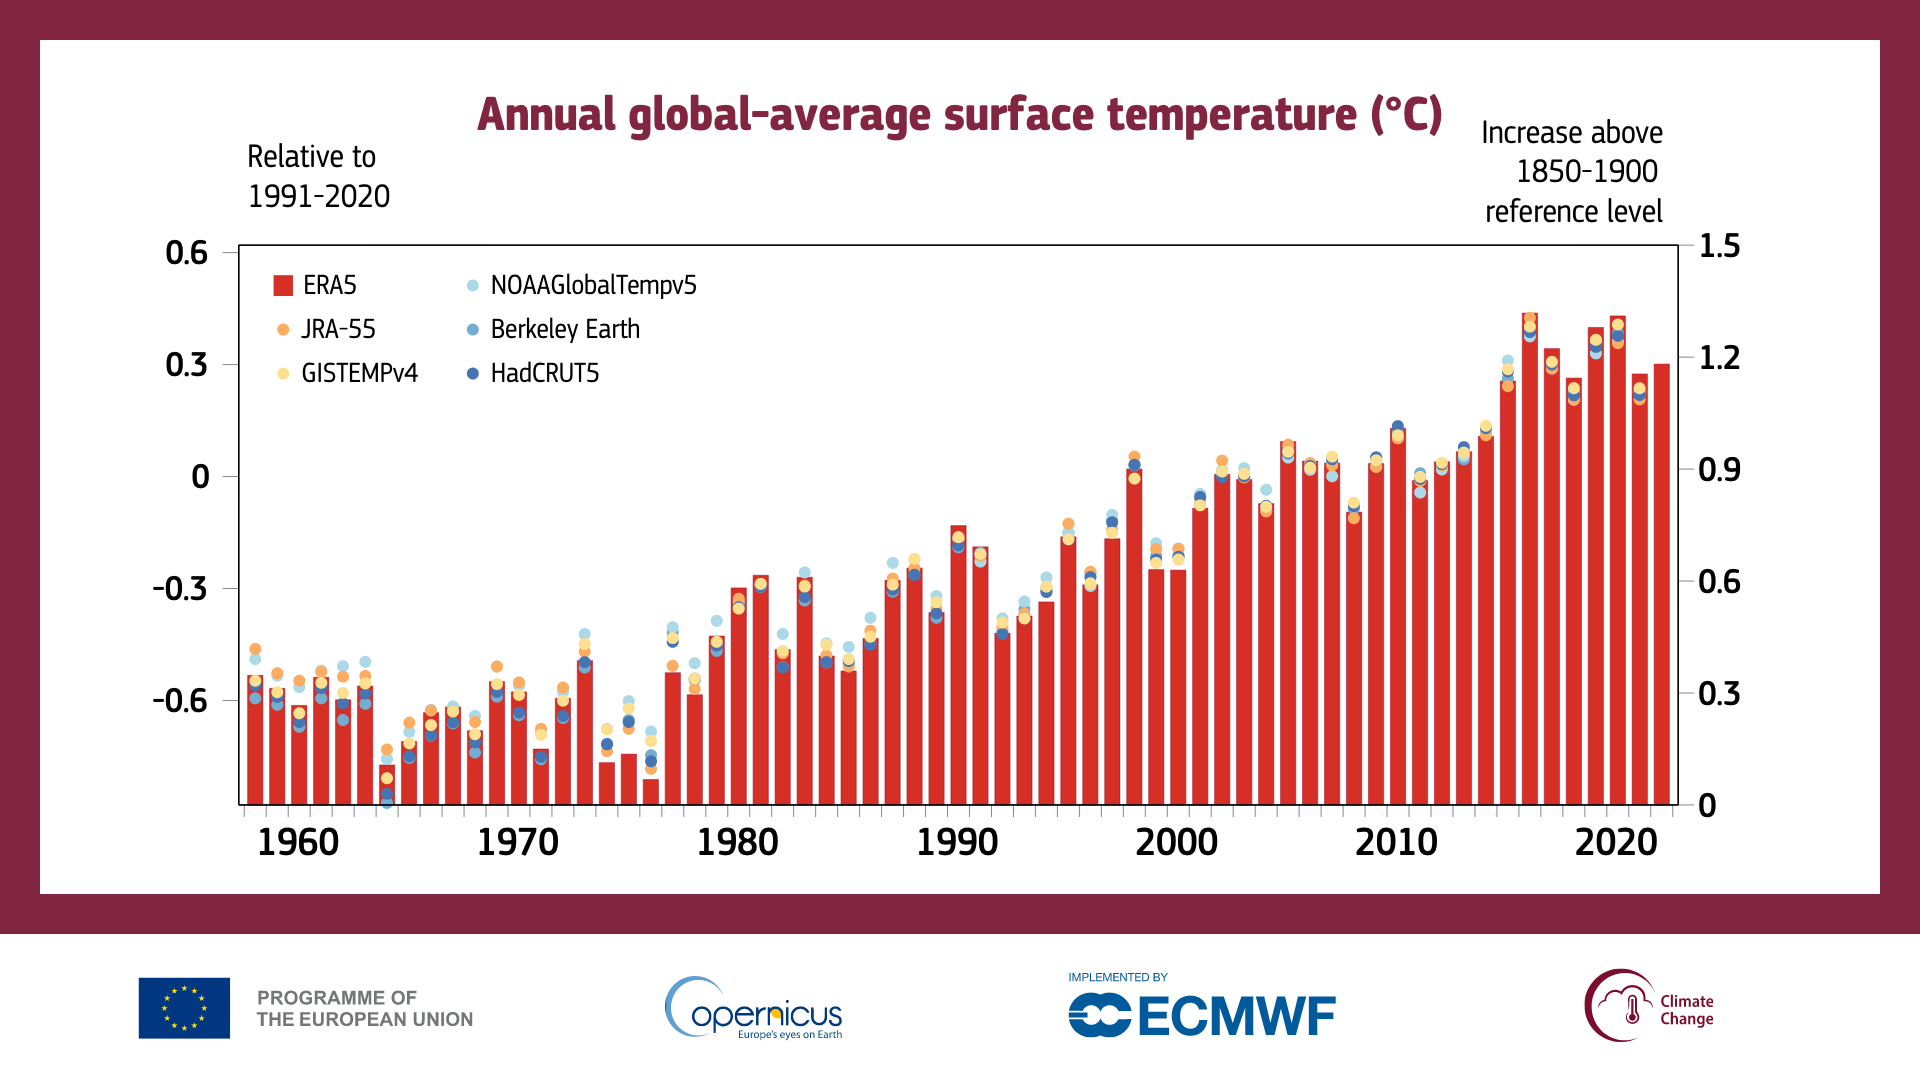 Moyennes annuelles de l'augmentation estimée de la température à la surface du globe au-dessus des niveaux de référence 1991-2020 (ordonnée de gauche) et 1850-1900 (ordonnée de droite). L'année 2022 est calculée avec ERA5 uniquement, toutes les autres années selon six ensembles de données différents. [ECMWF - Copernicus Climate Change Service]